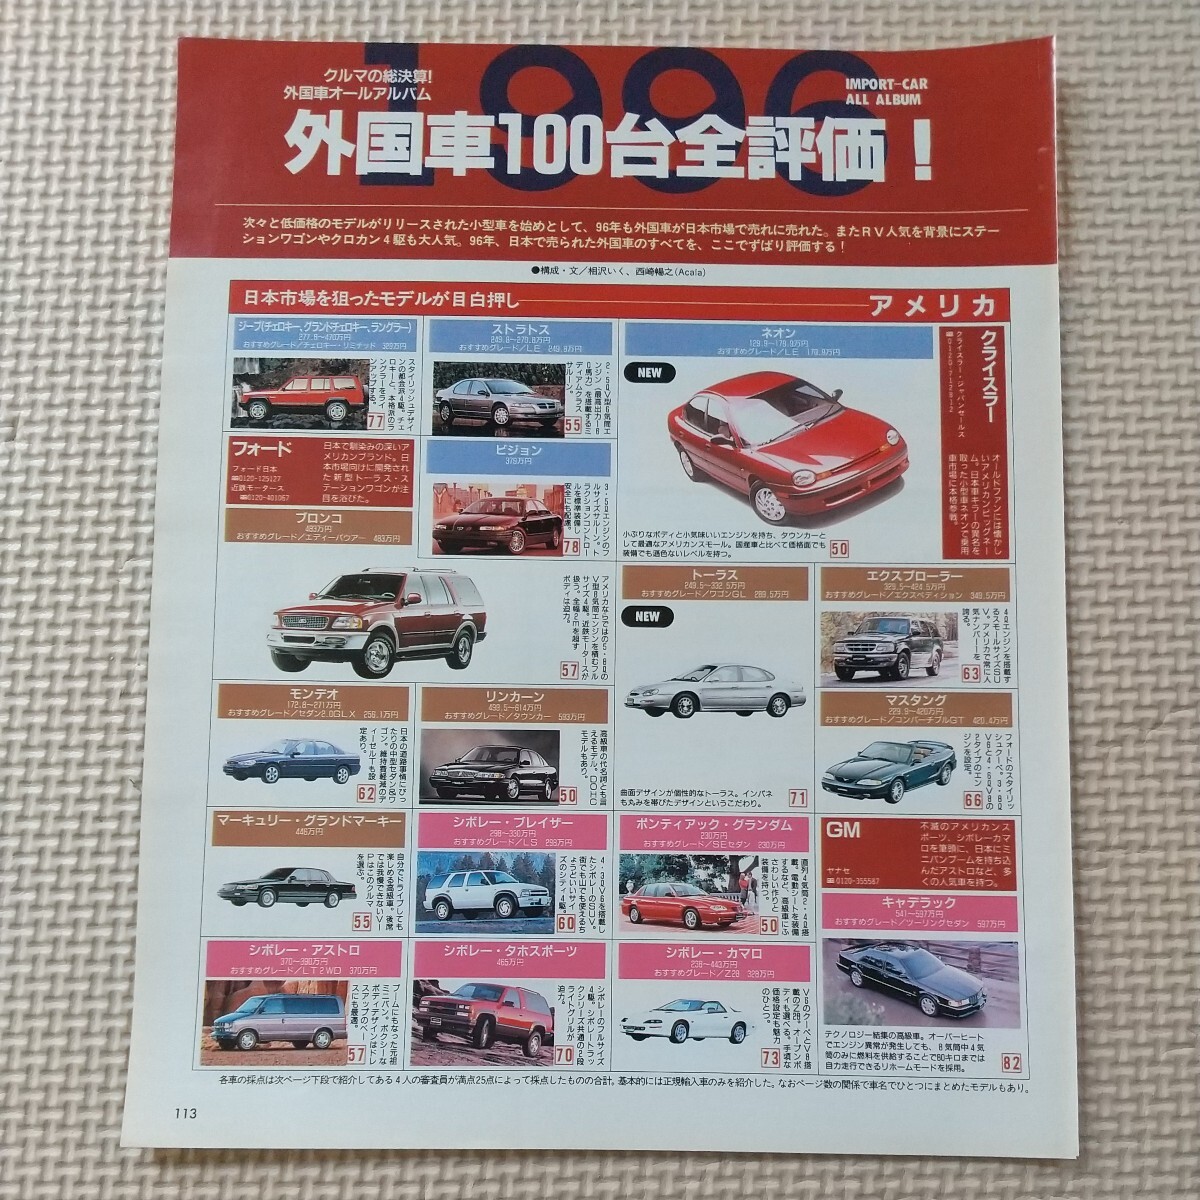  【雑誌切り抜き】 1996年 外国車100台全評価! 切り抜き6ページ_画像2